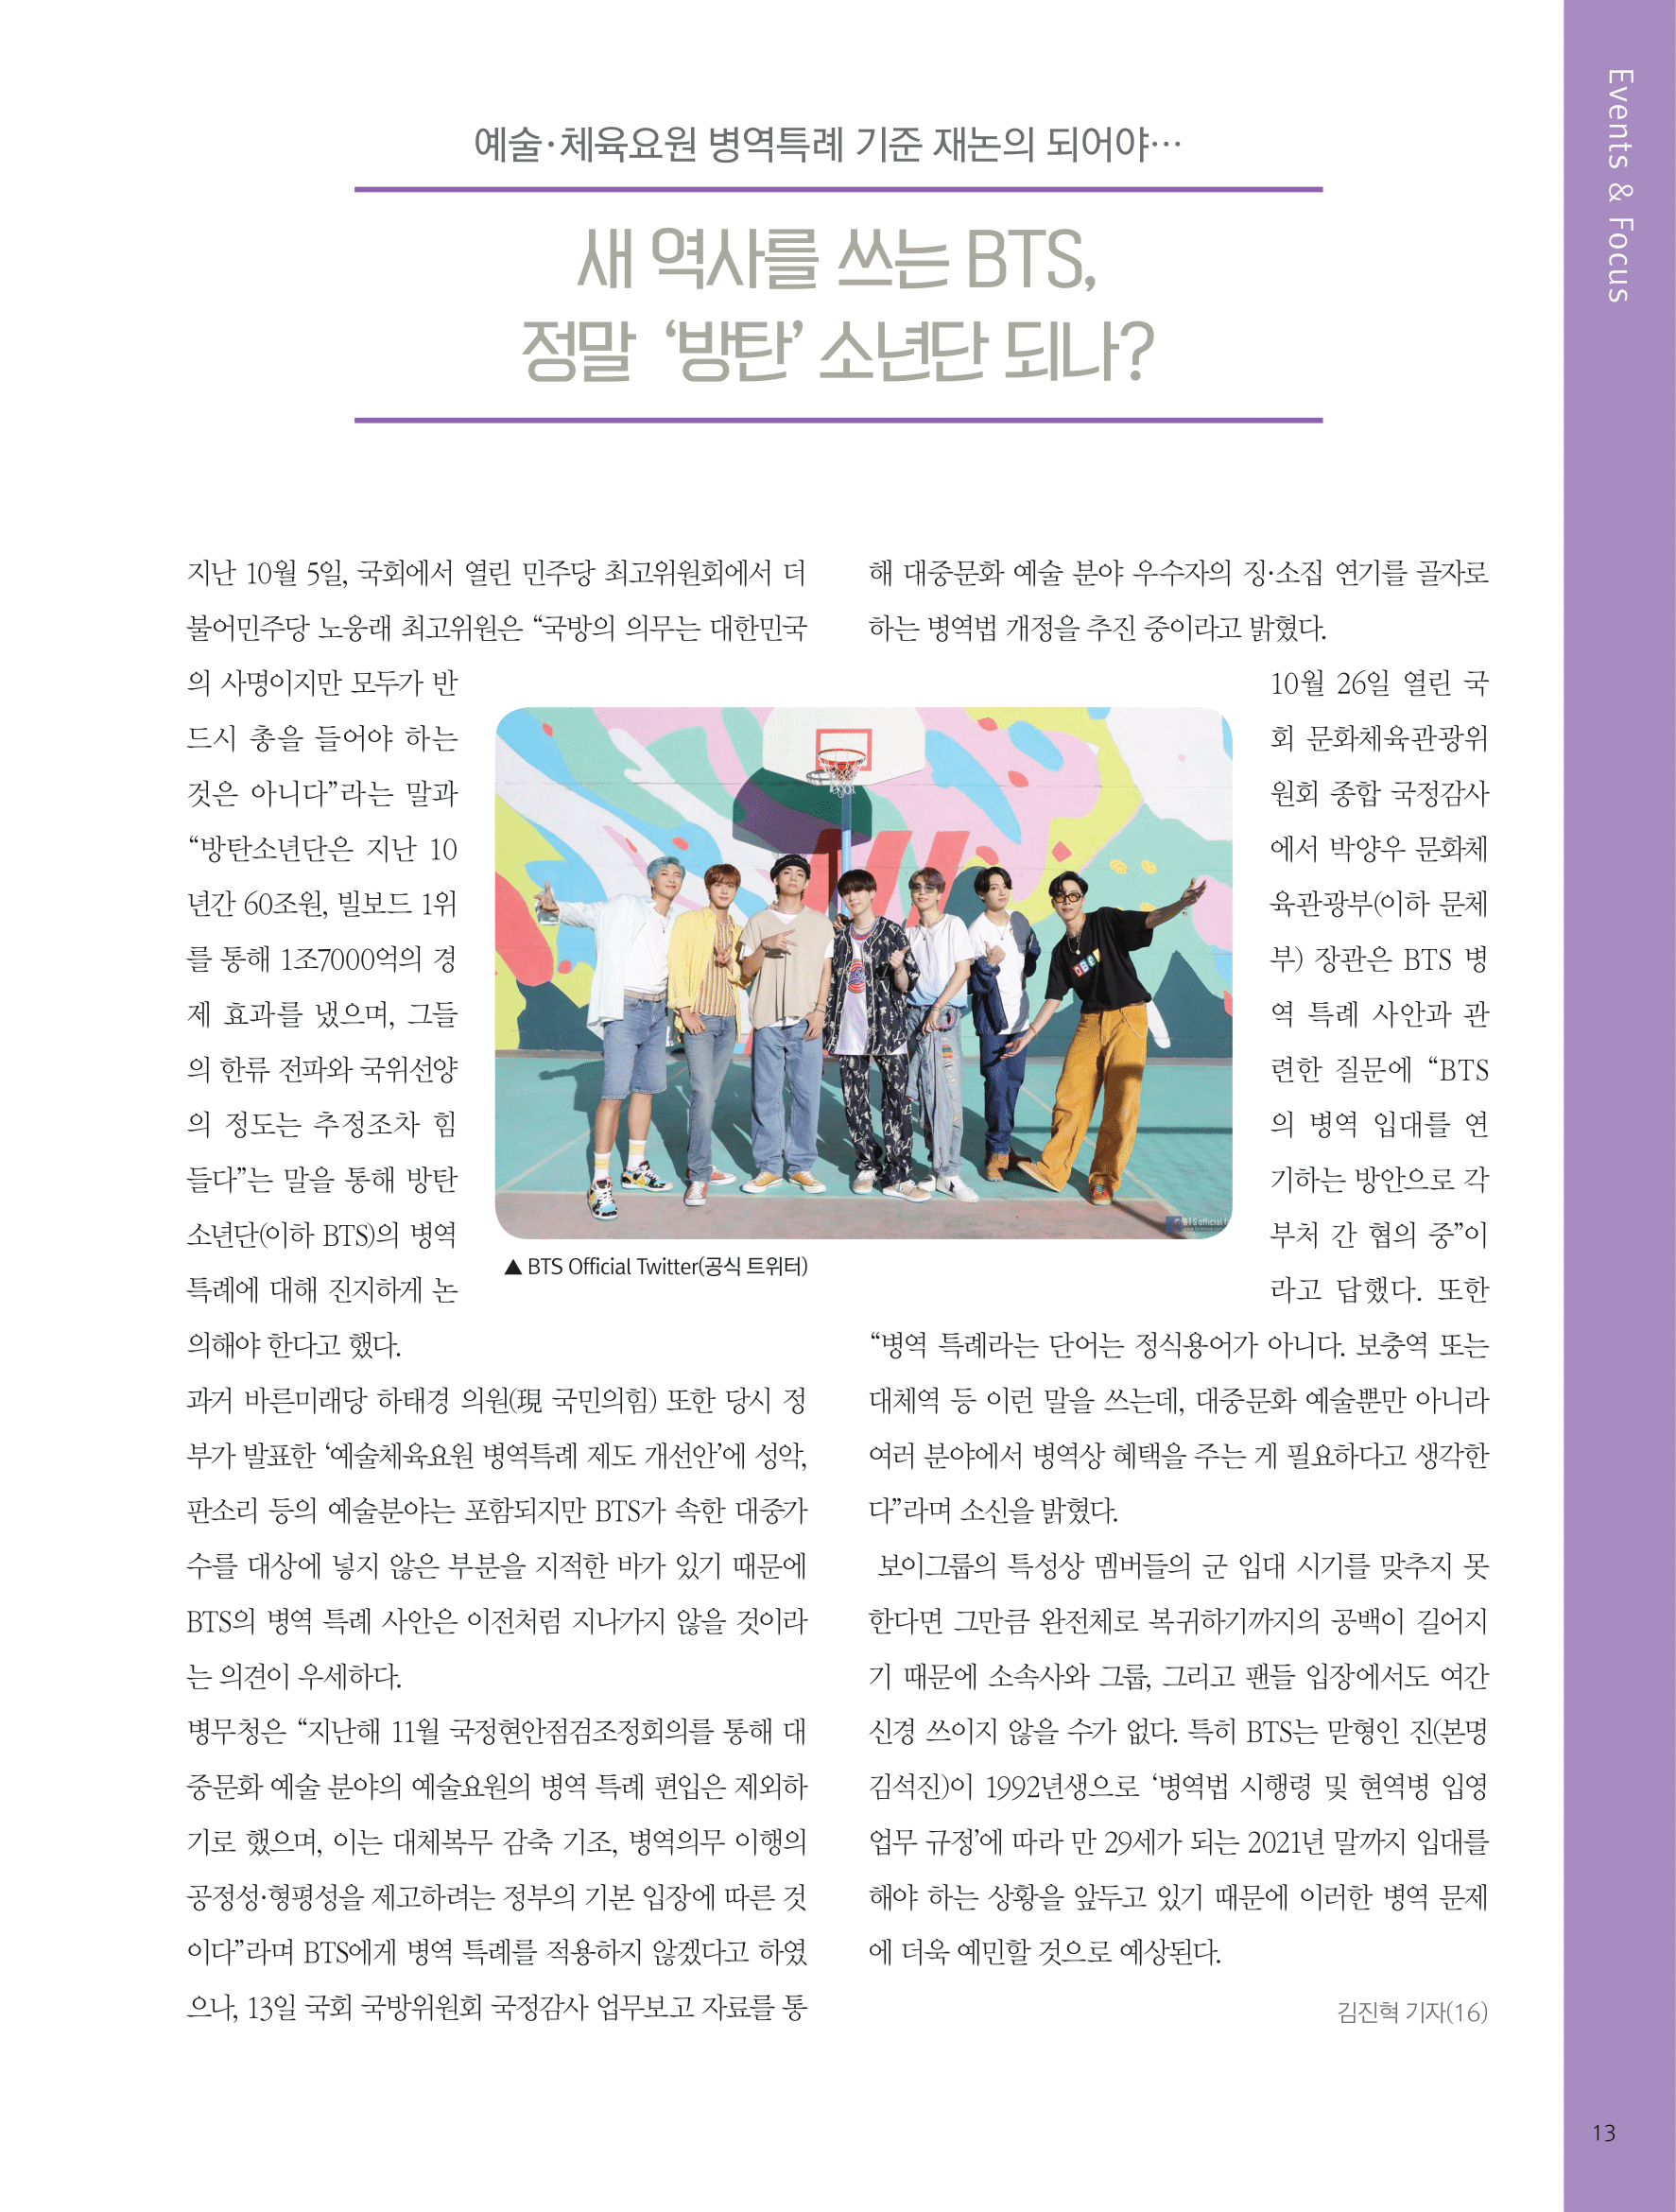 뜻새김 신문 76호 12